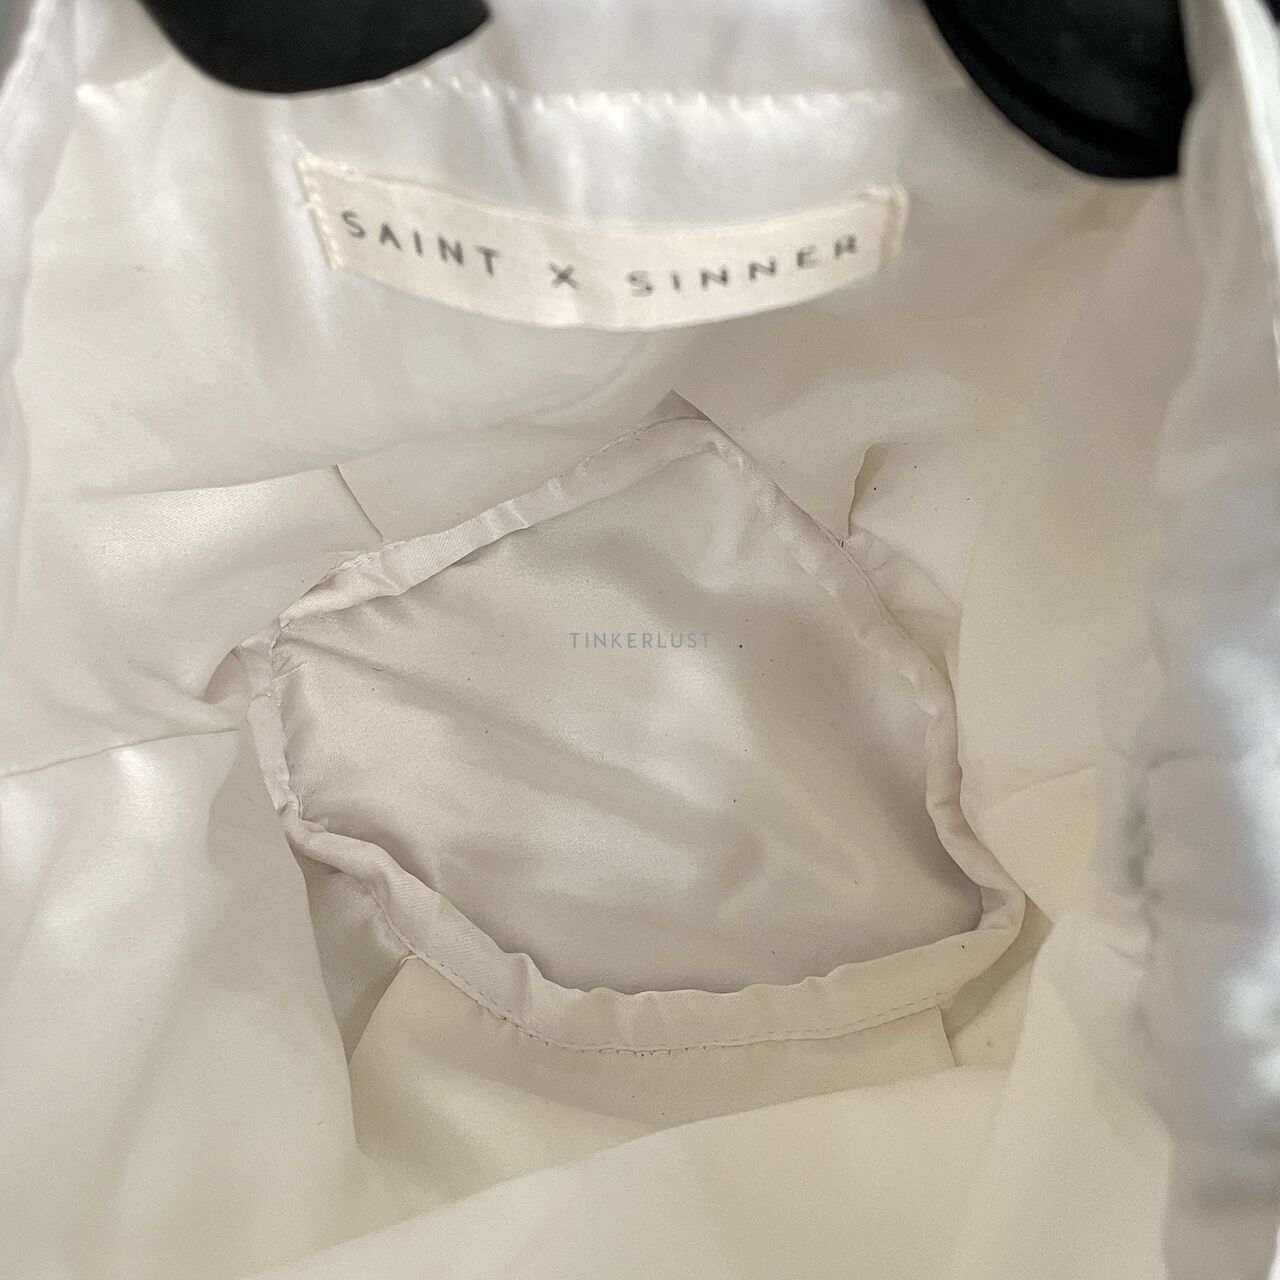 Saint X Sinner Broken White Dumpling Bag